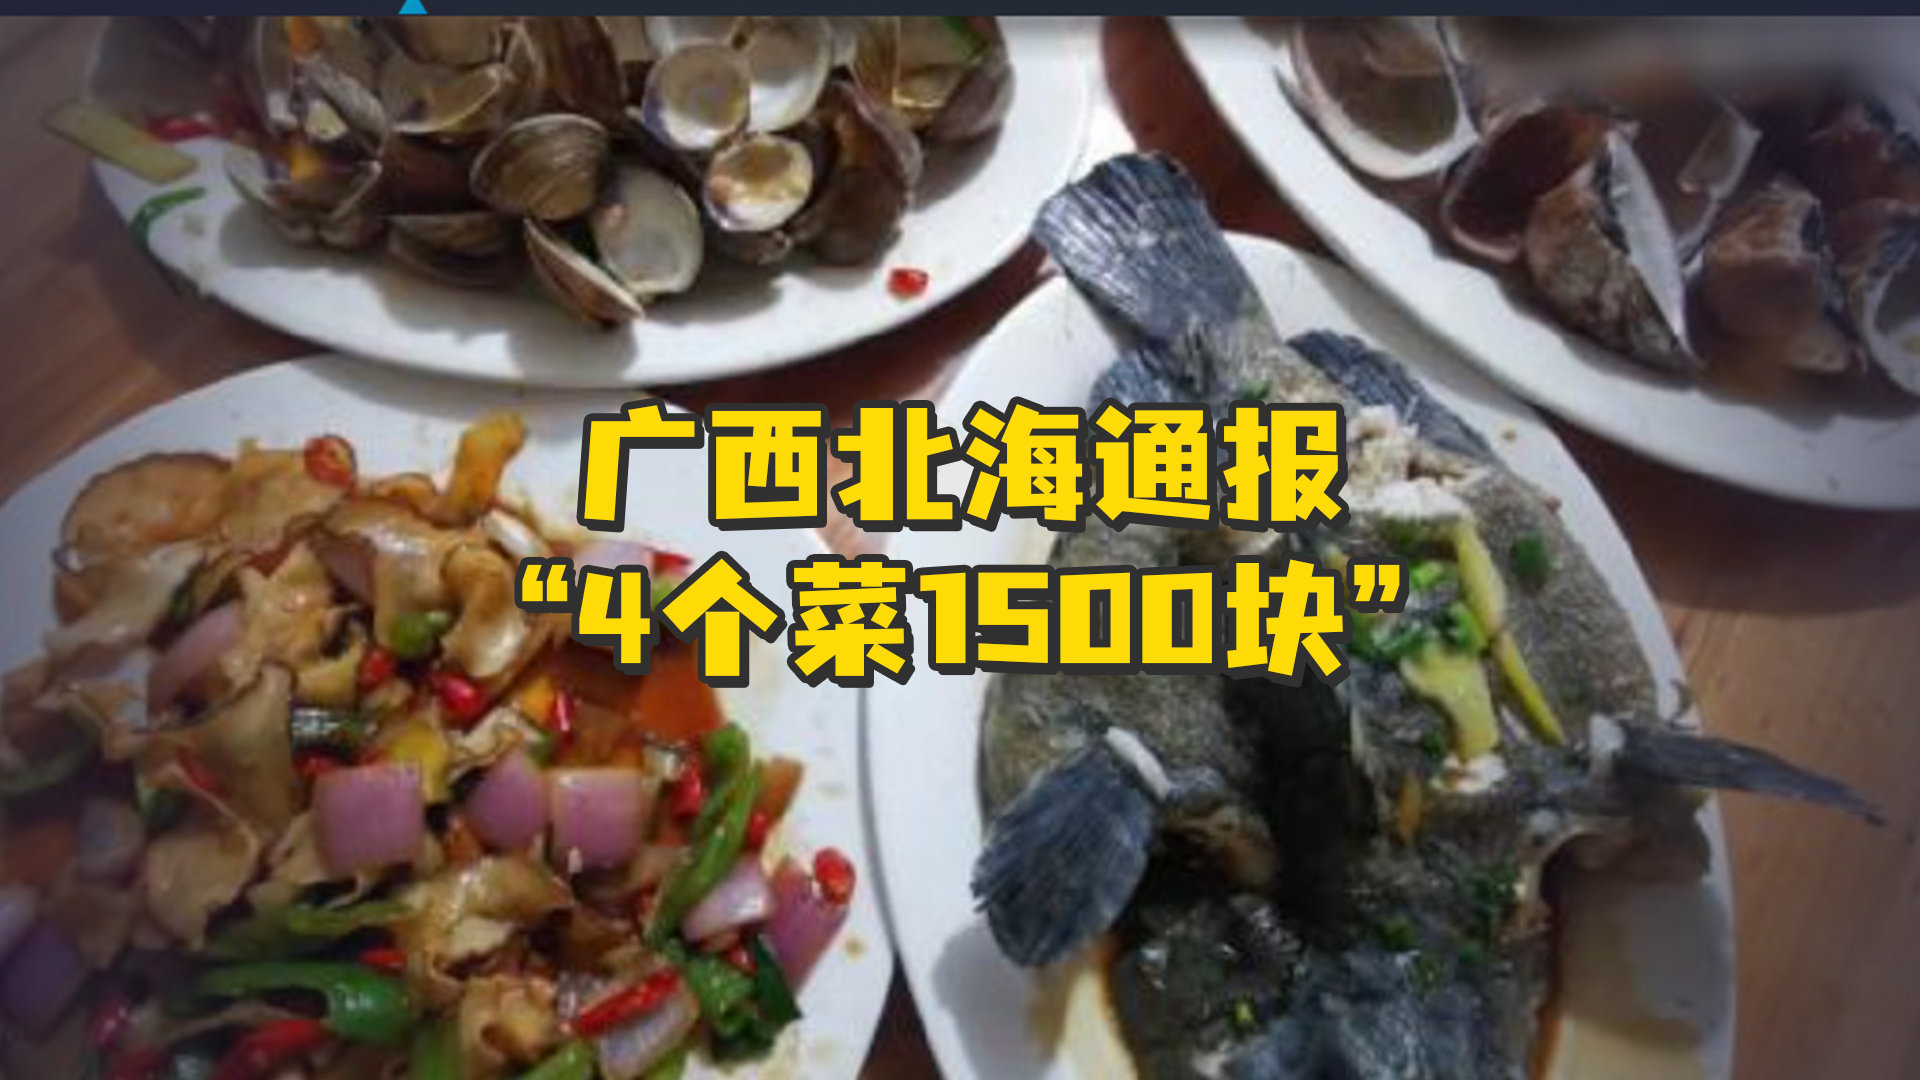 广西北海通报“4个菜1500块”：存在支付出租车司机回扣，停业整改